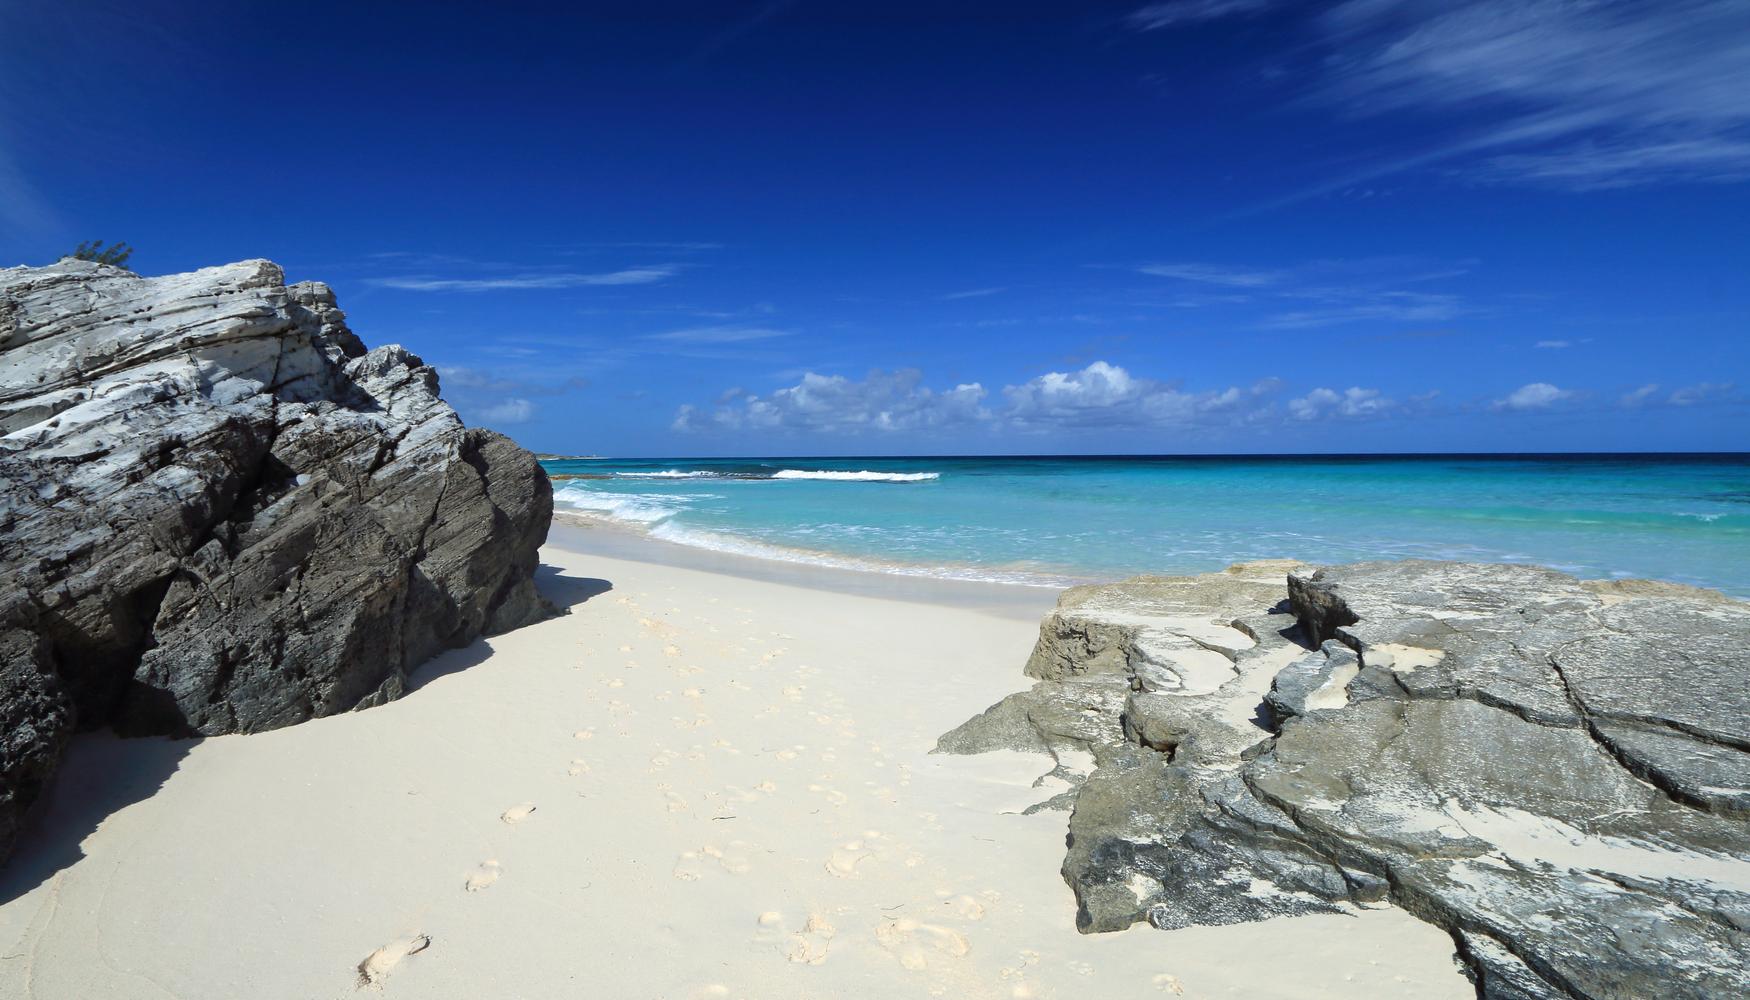 Vacaciones en Bahamas desde 929 € oferta de vuelo+hotel en KAYAK